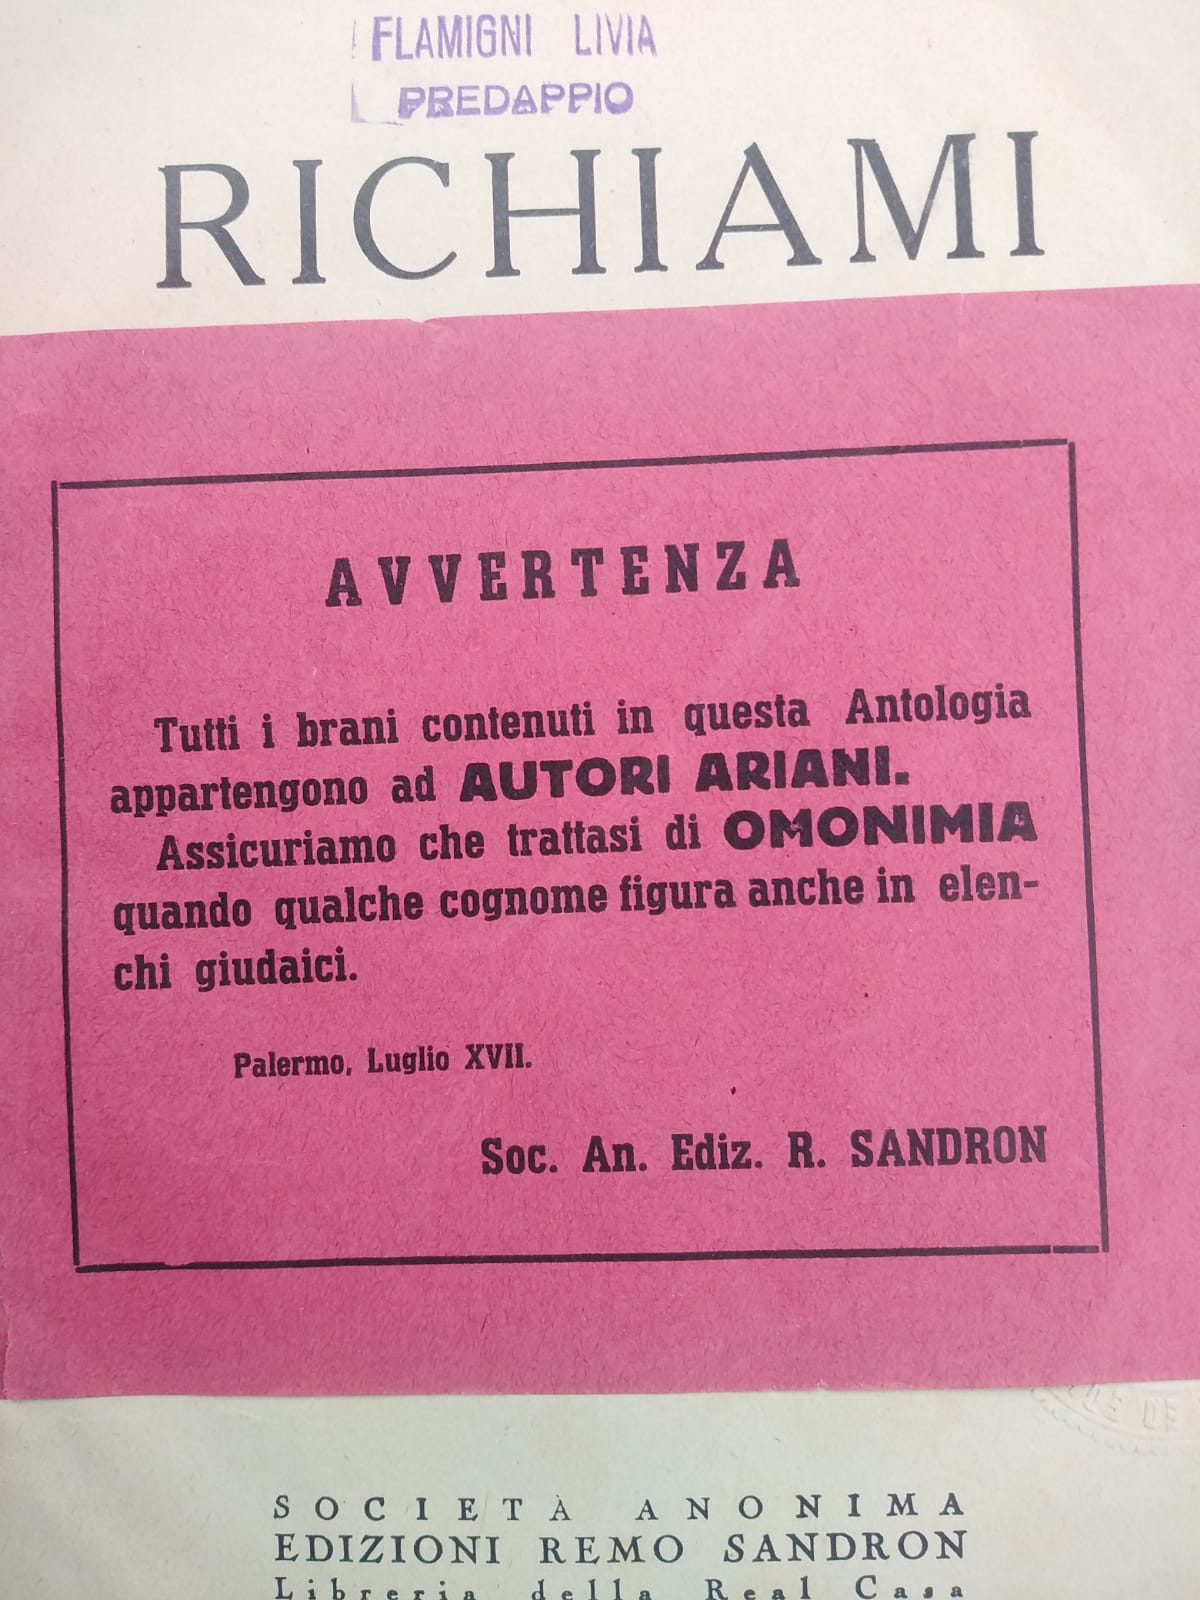 Una ‘pecetta’ anti-ebrea per un’antologia scolastica degli anni ’30